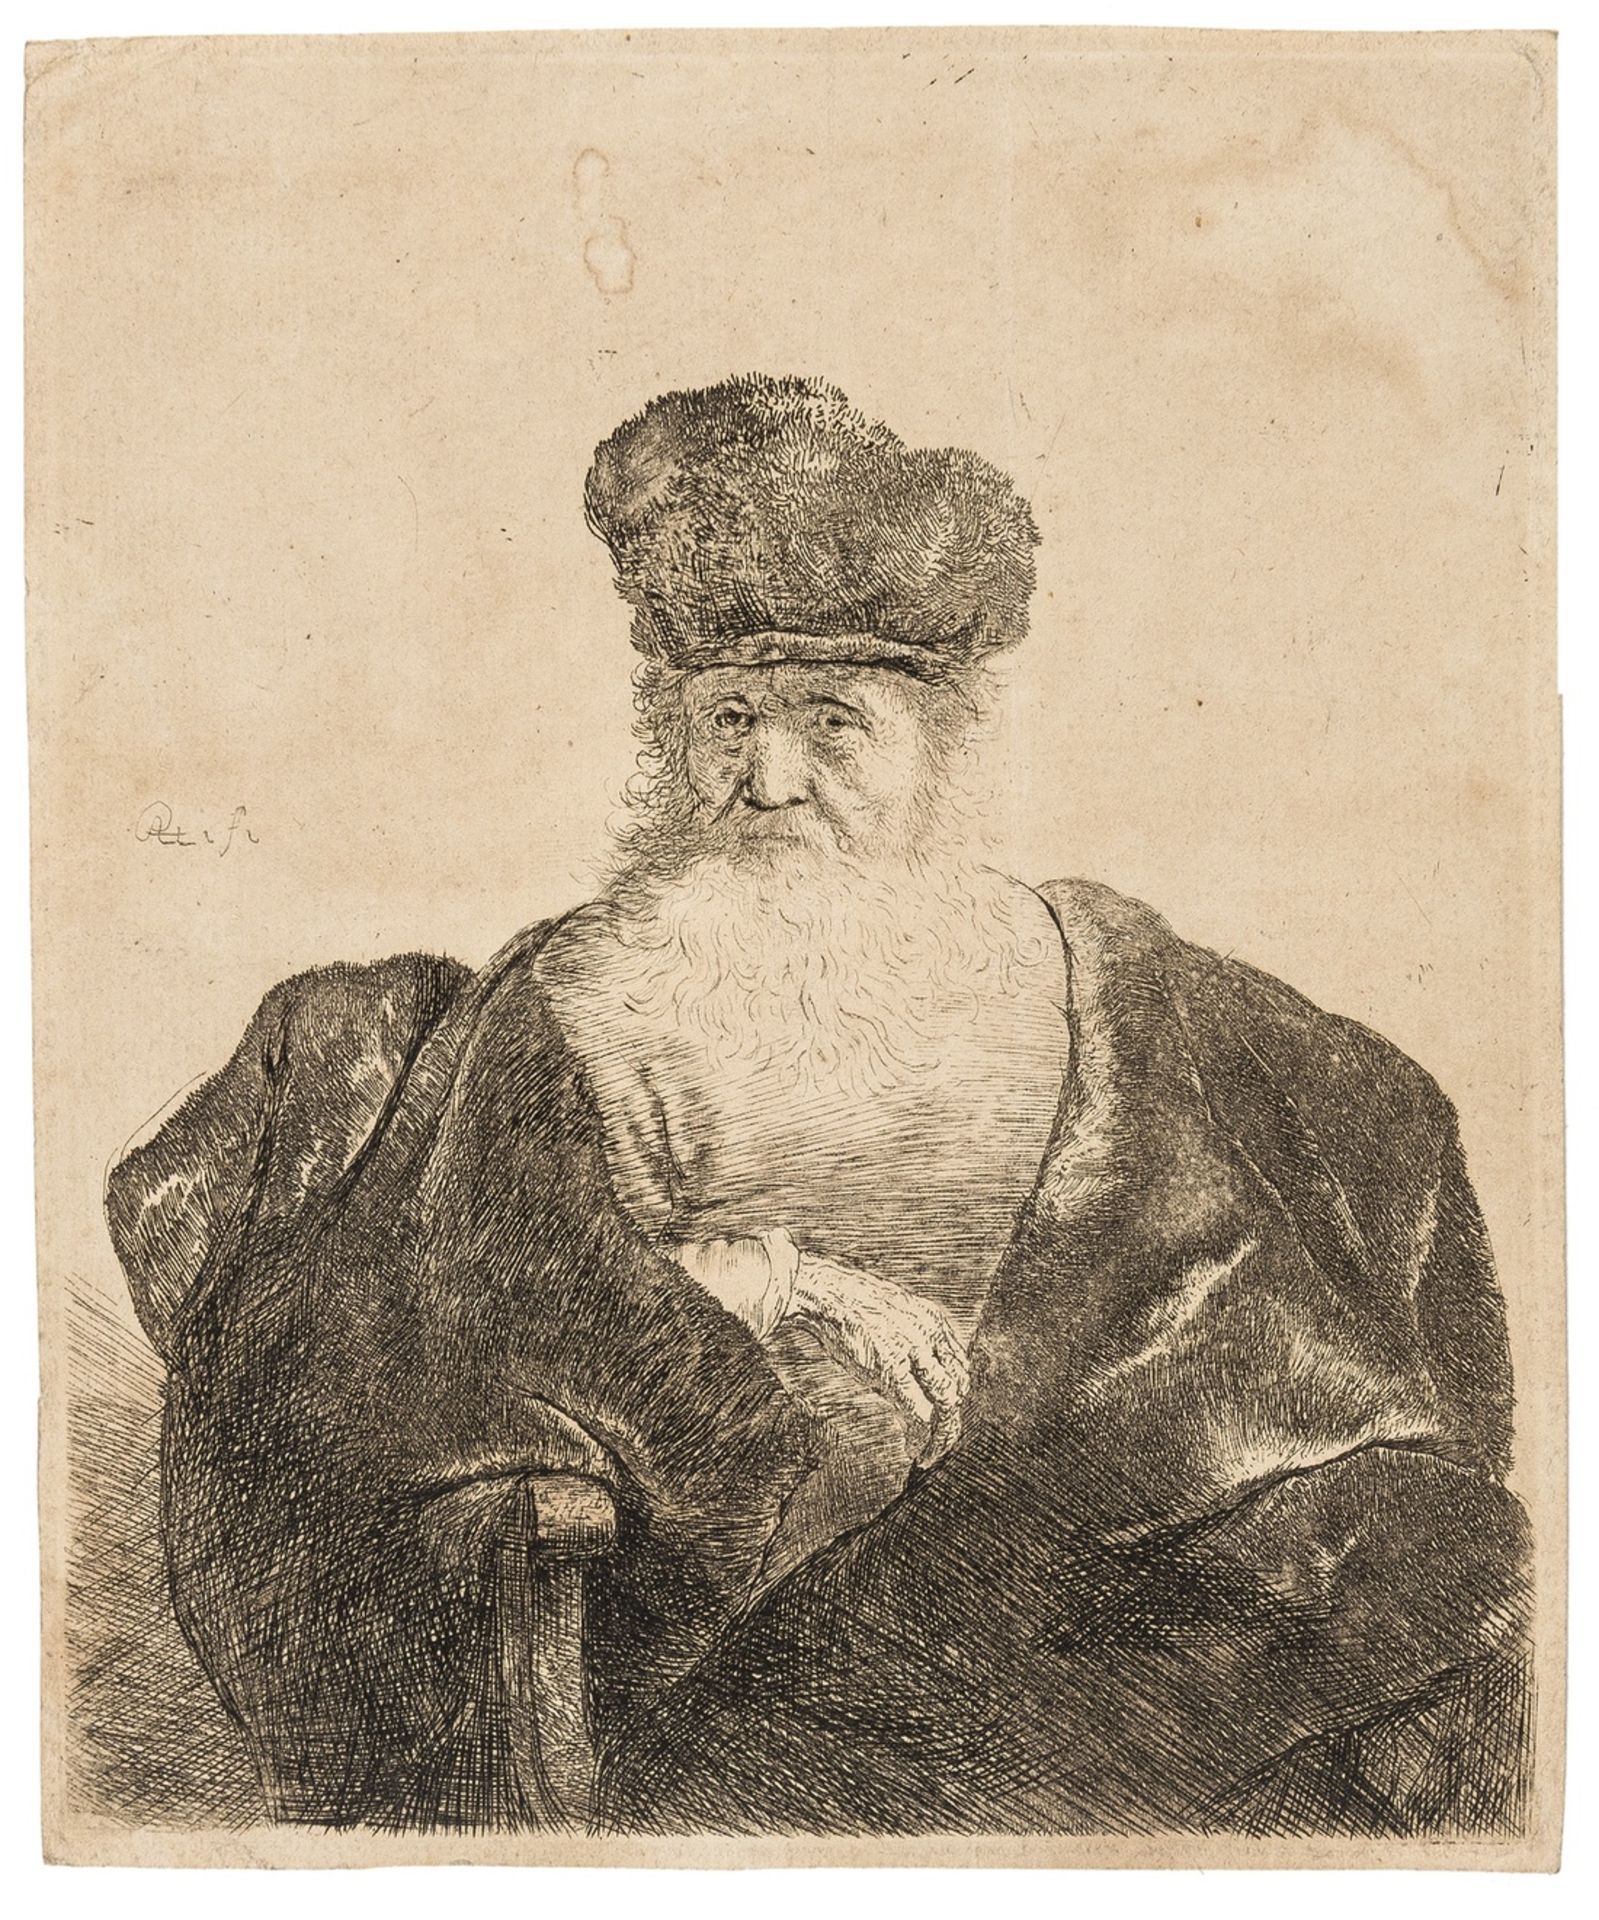 Rijn (Rembrandt van, 1606-1669) Old Man with Beard, Fur Cap, and Velvet Cloak, [c. 1631]